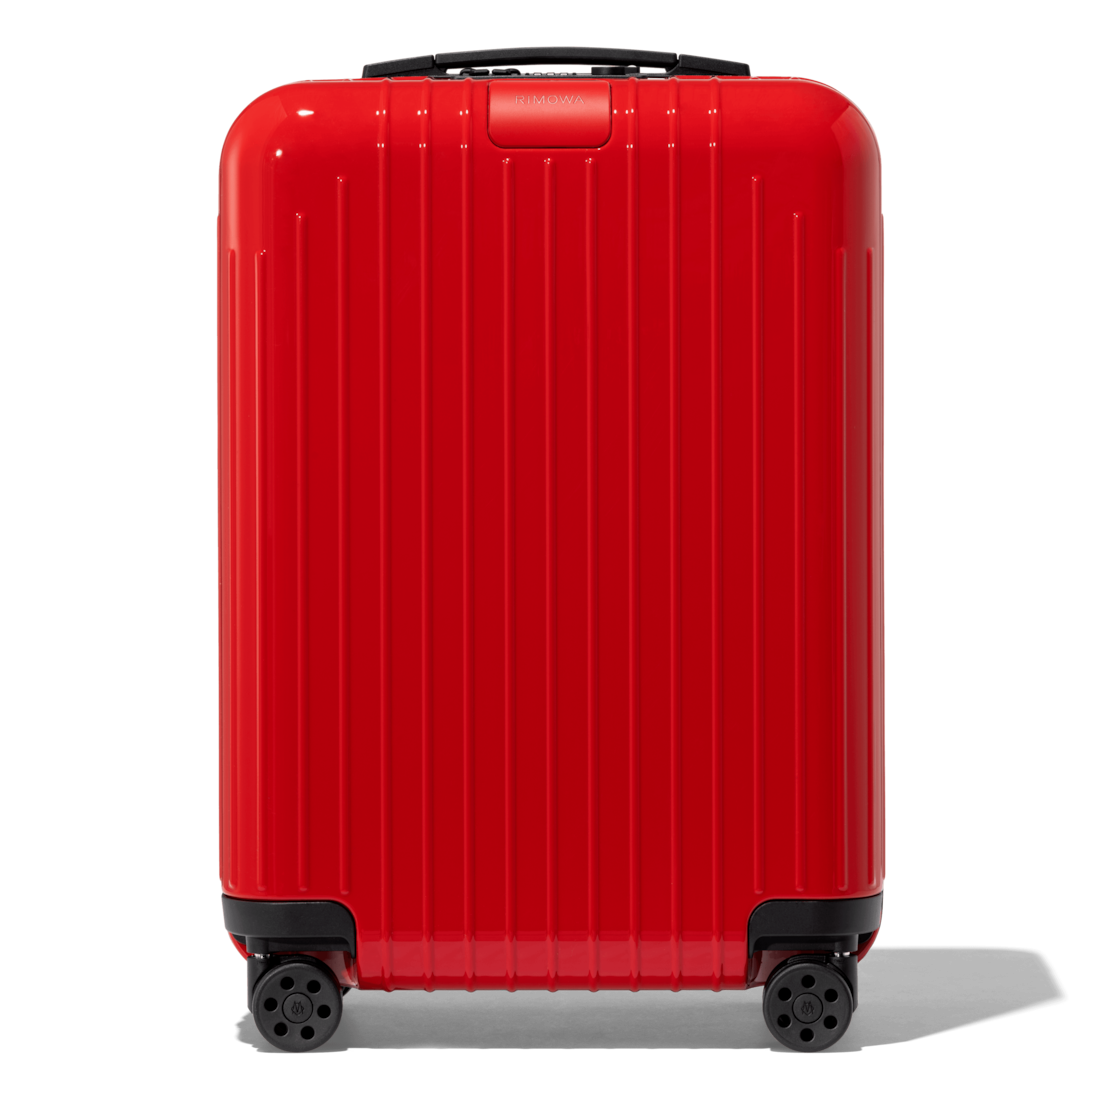 rimowa cabin luggage price